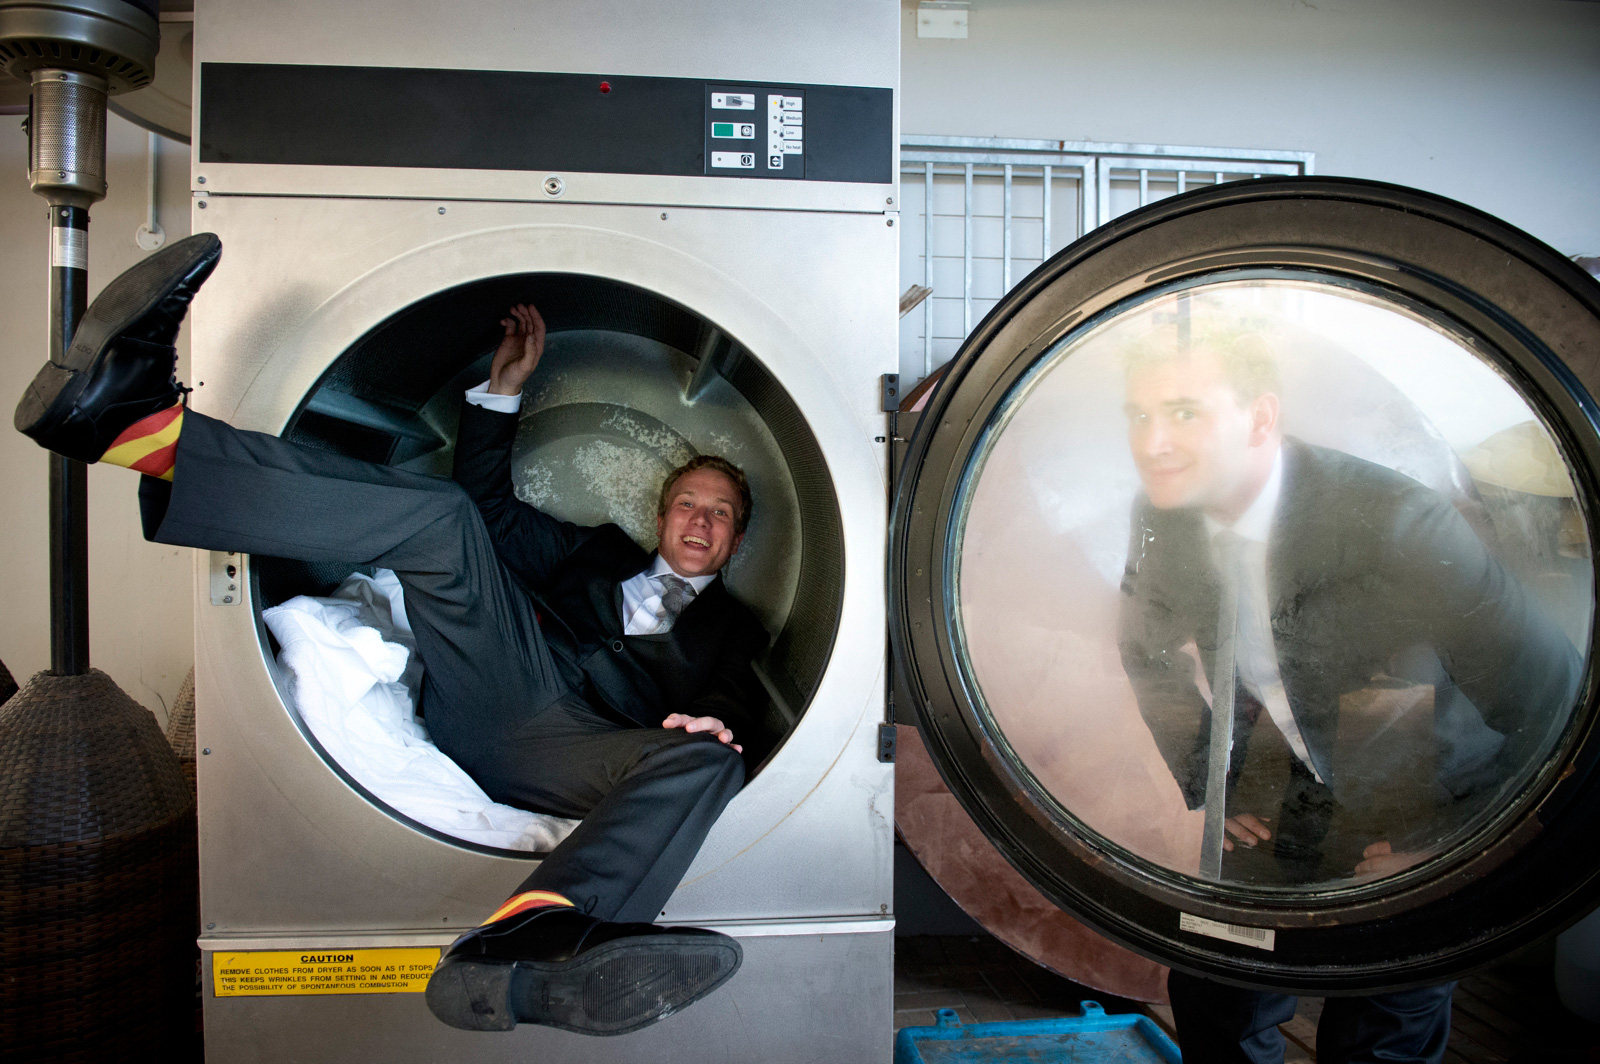 man in washing machine